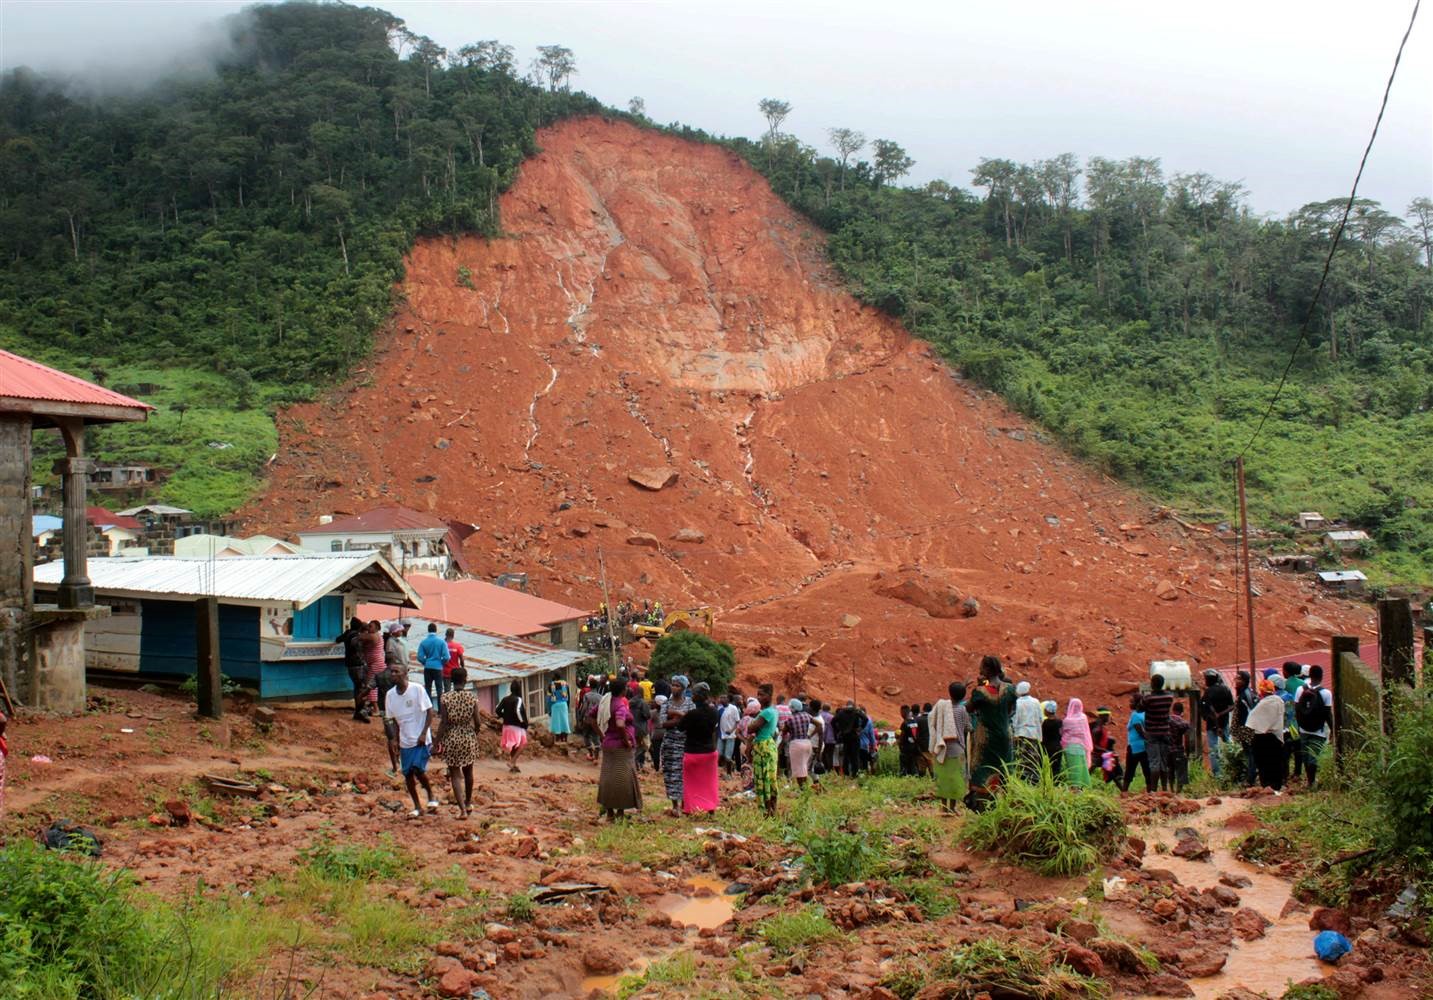 Uganda: Landslide Destroys Property Worth Millions of Shillings, Displace Over 200 People